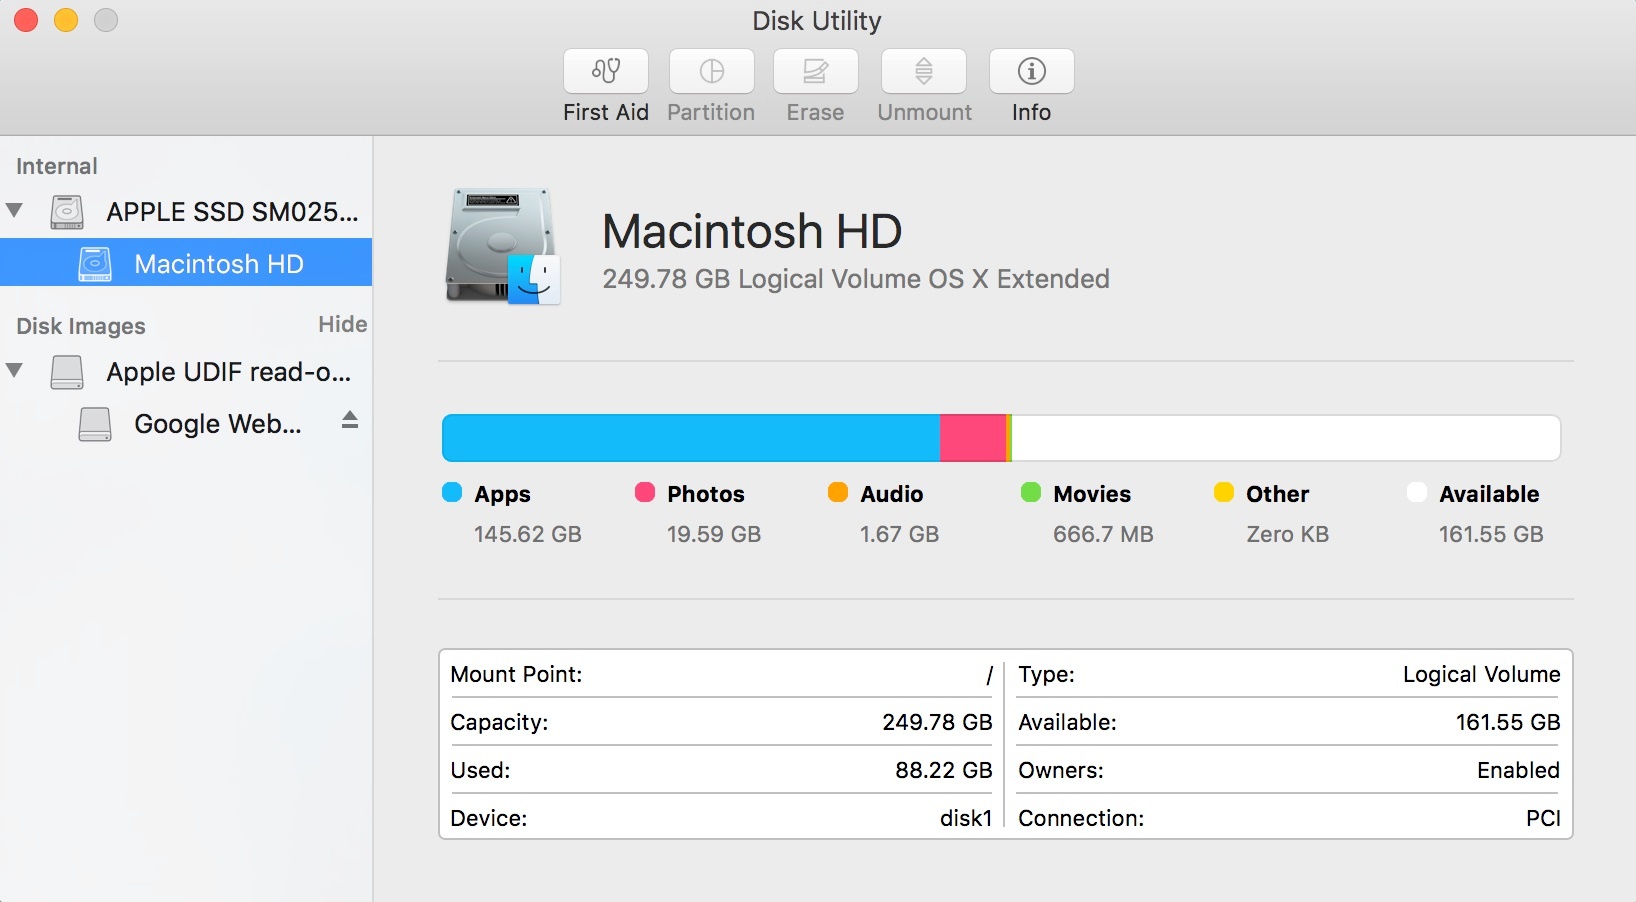 mac disk cleaner app